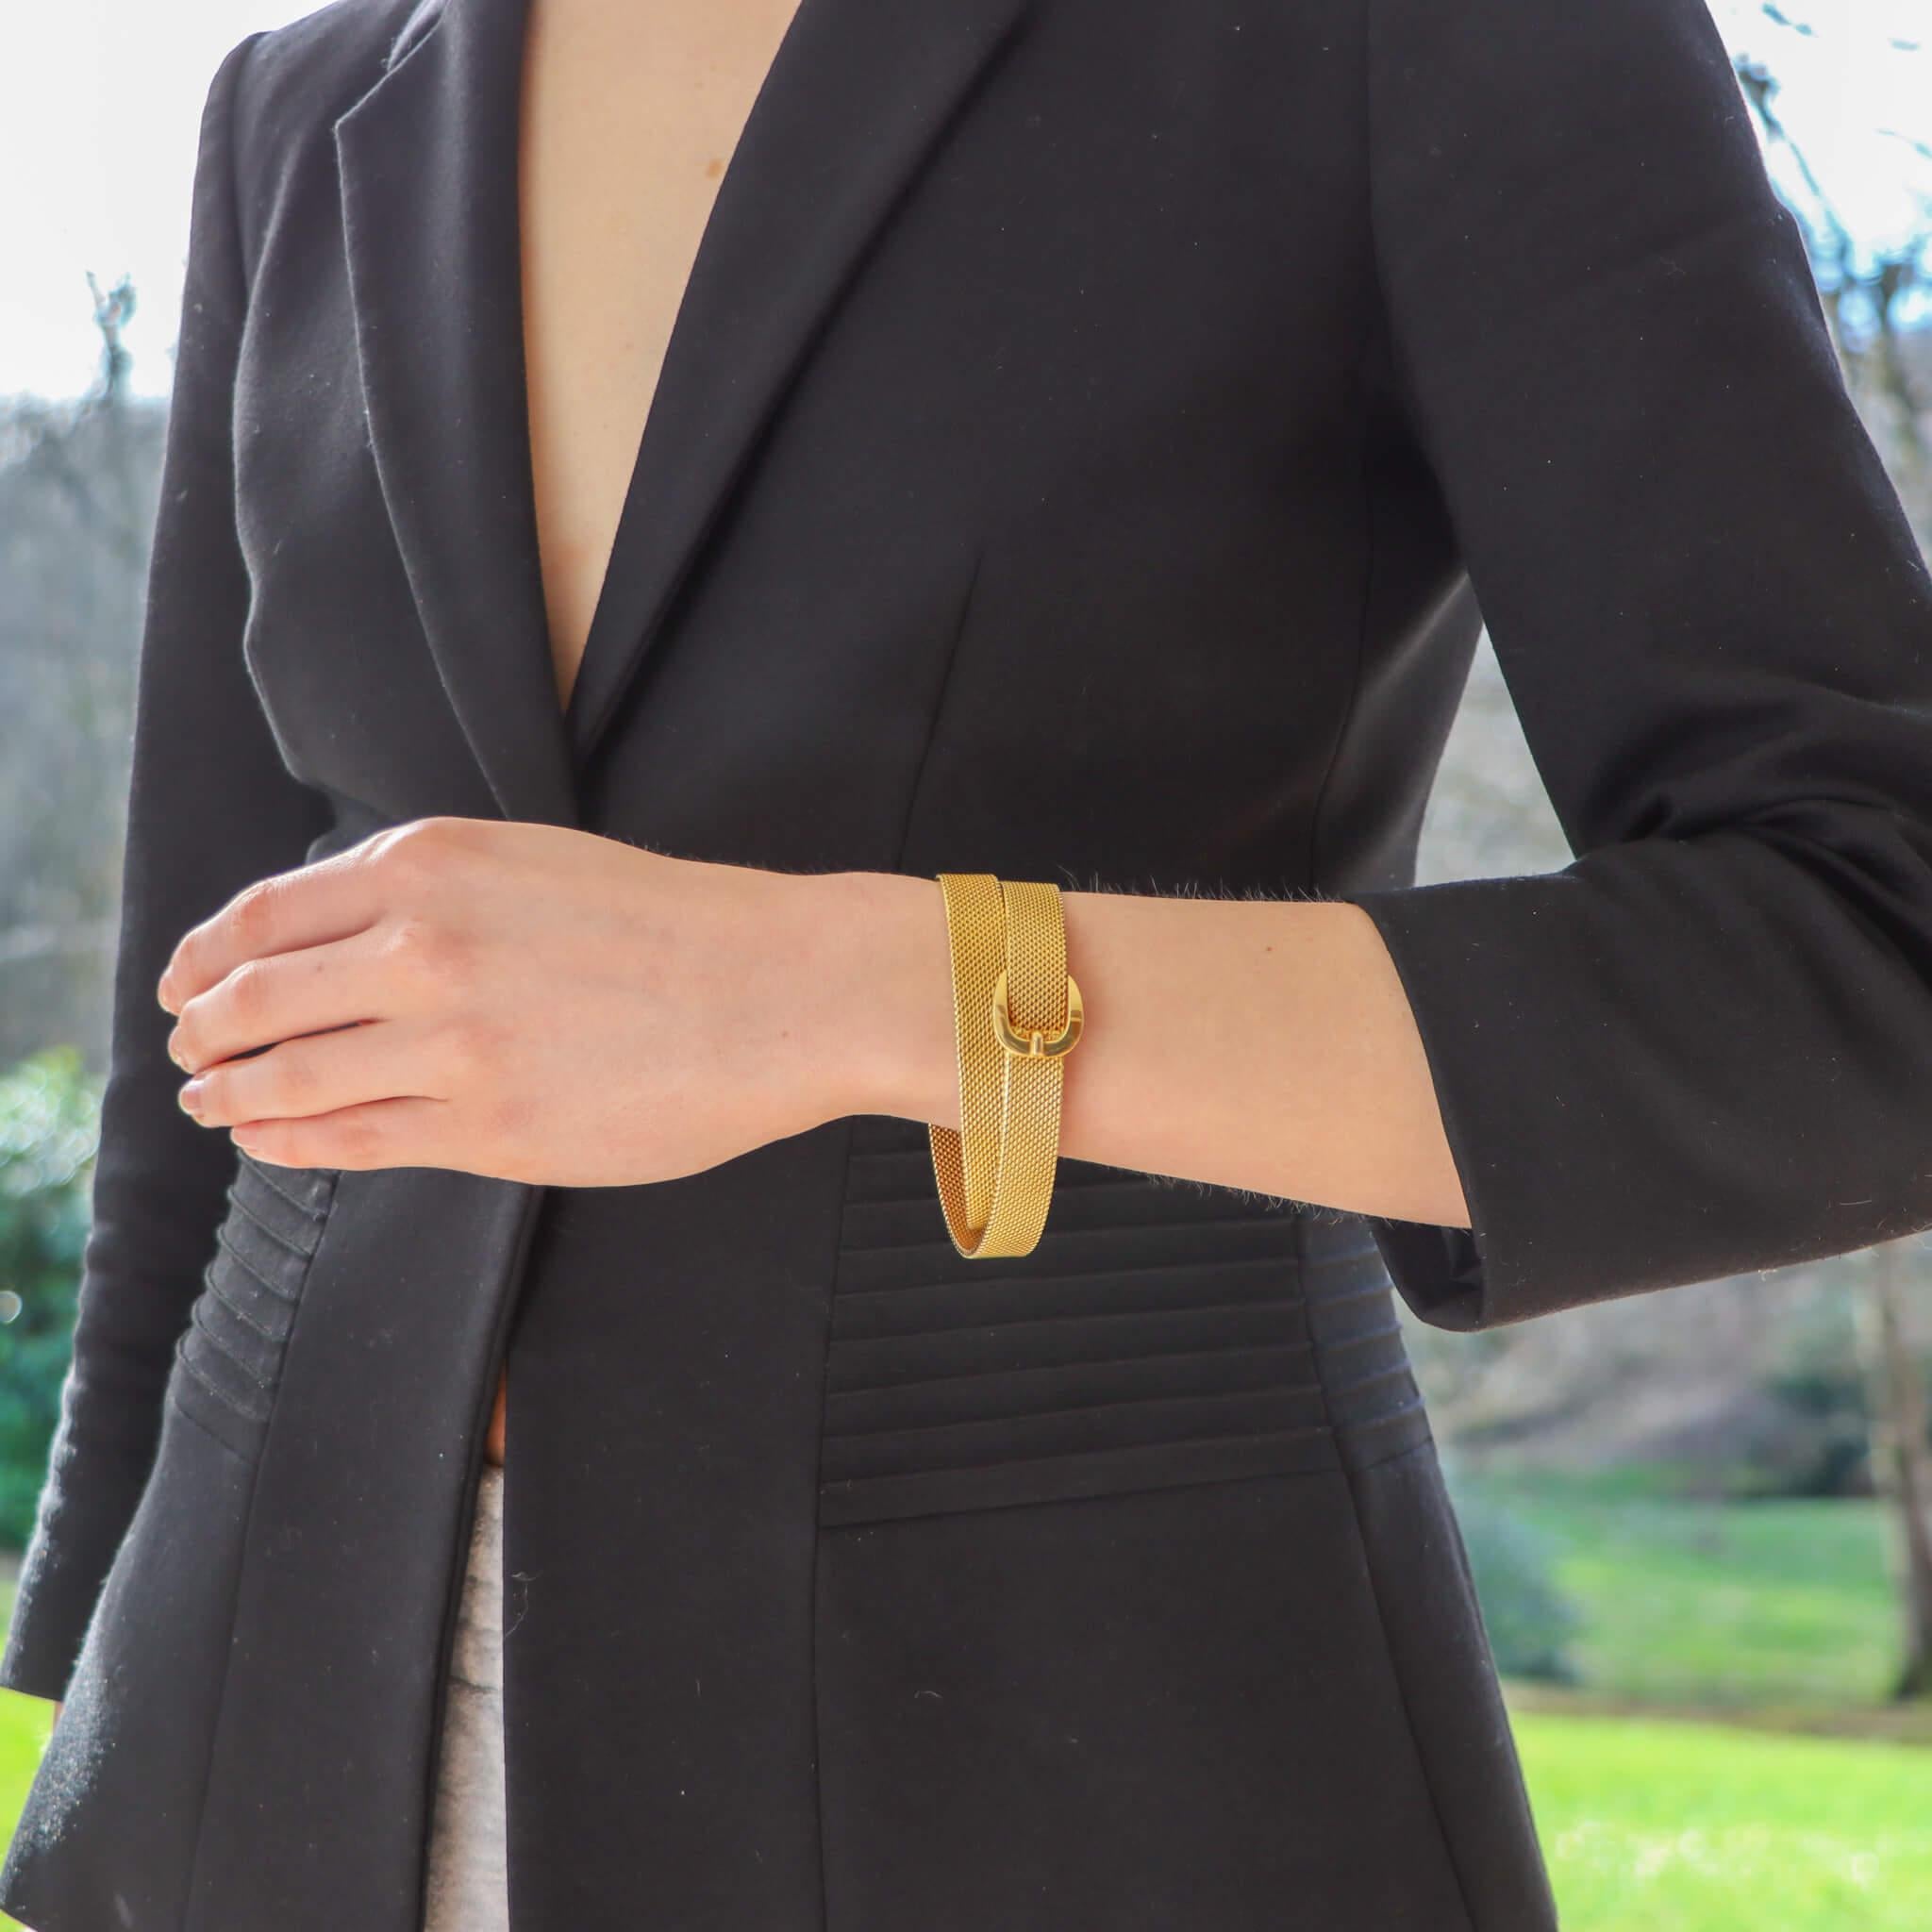  Eine seltene Vintage Hermès Gürtelschnalle Wrap-Armband in massivem 18k Gelbgold gesetzt. 

Das Armband wurde in wunderschöner Handarbeit aus Gelbgold gefertigt und zeigt vor allem das ikonische Hermès-Gürtelschnallenmotiv, das als Verschluss des